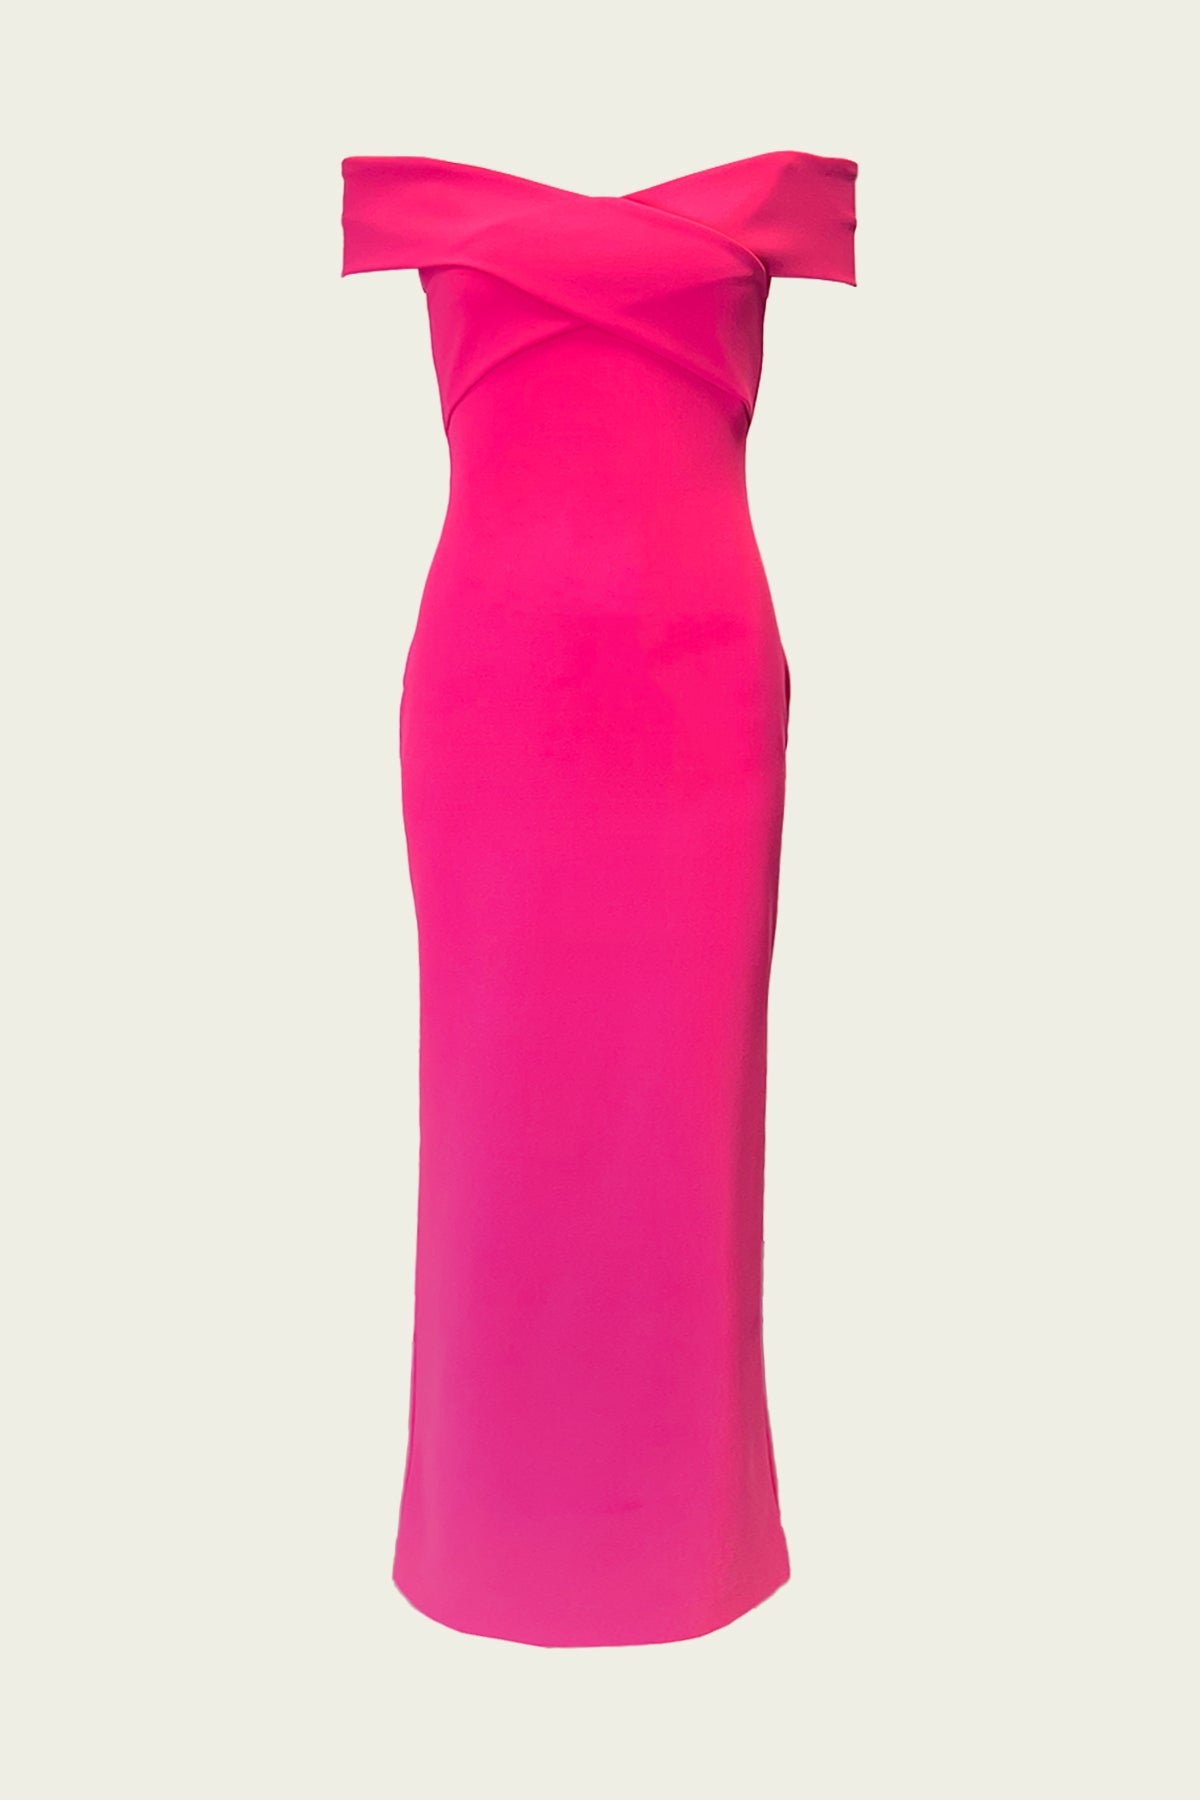 Ines Maxi Dress in Ultra Pink - shop-olivia.com